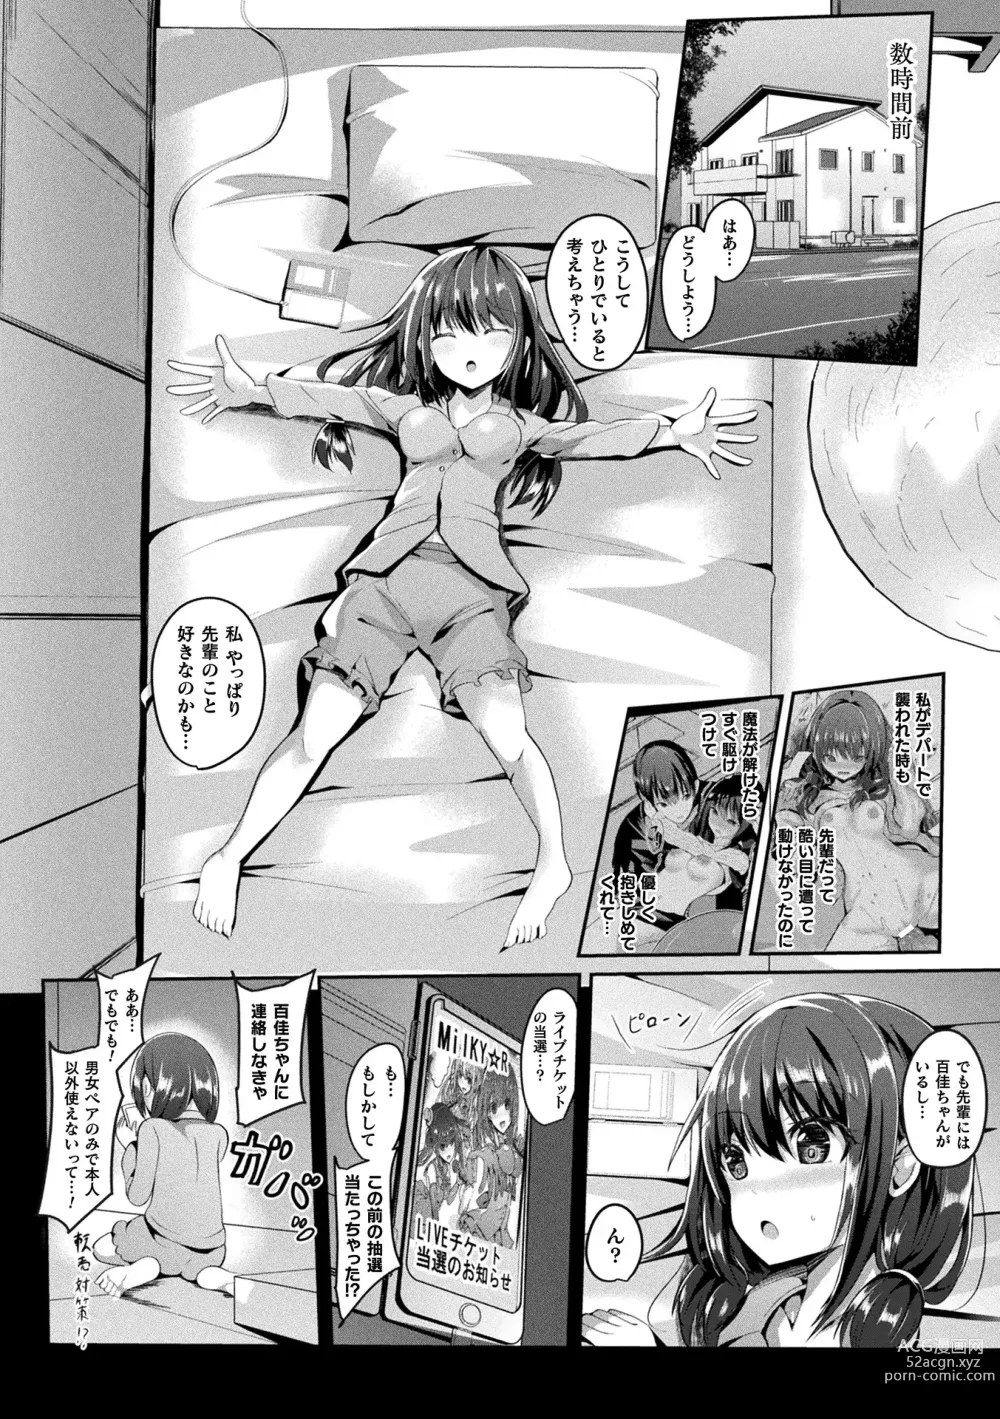 Page 8 of manga Mahou Shoujo Martel Rare 2 -Toraware shi Inyoku-